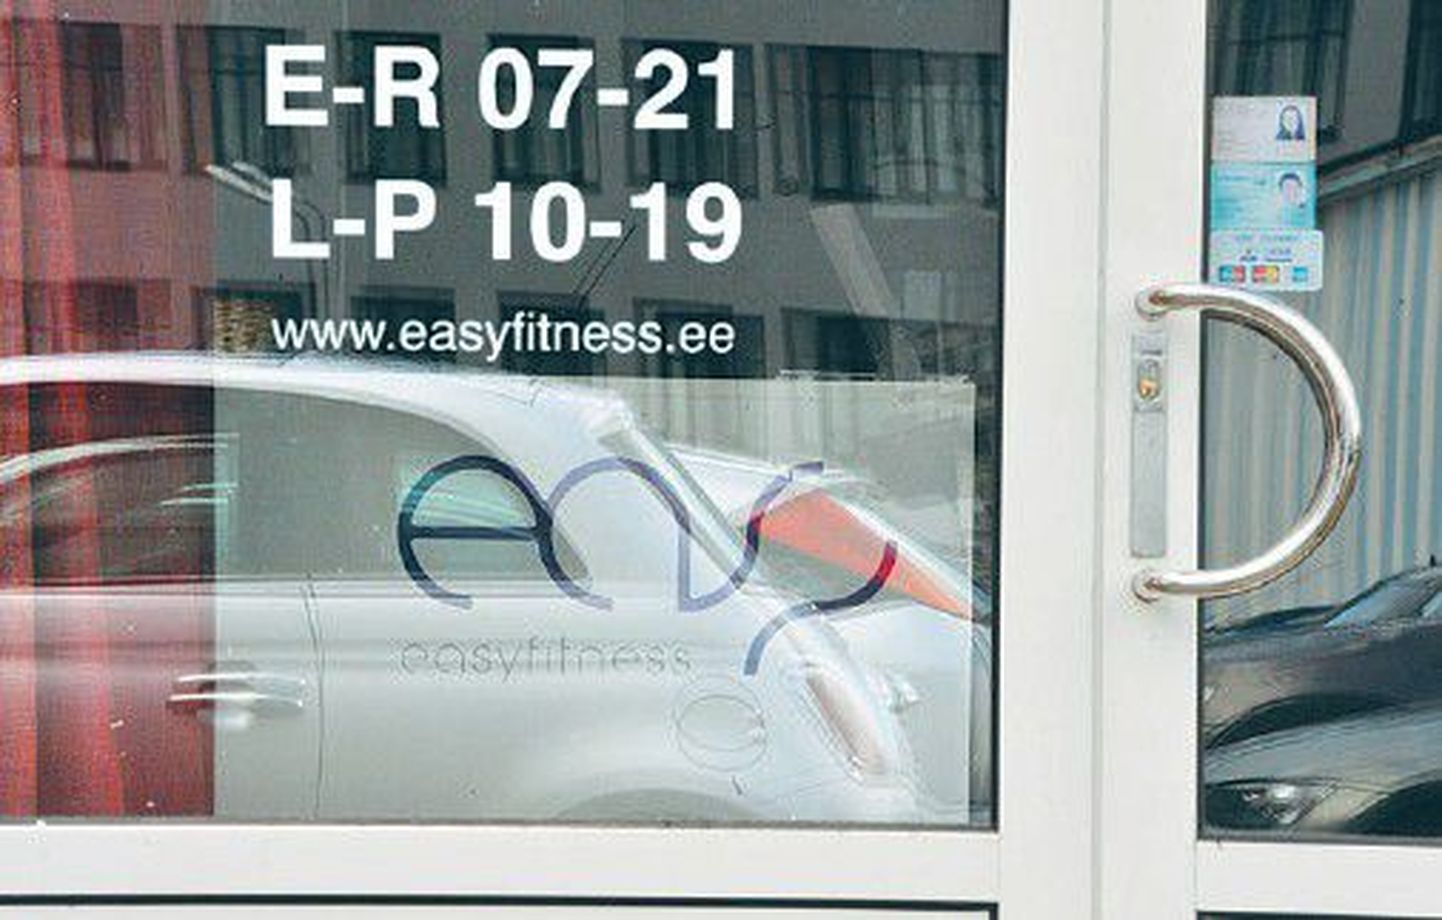 Дверь спортклуба Easy Fitness заперта — ни клиентам, ни работникам фирмы туда больше не попасть.